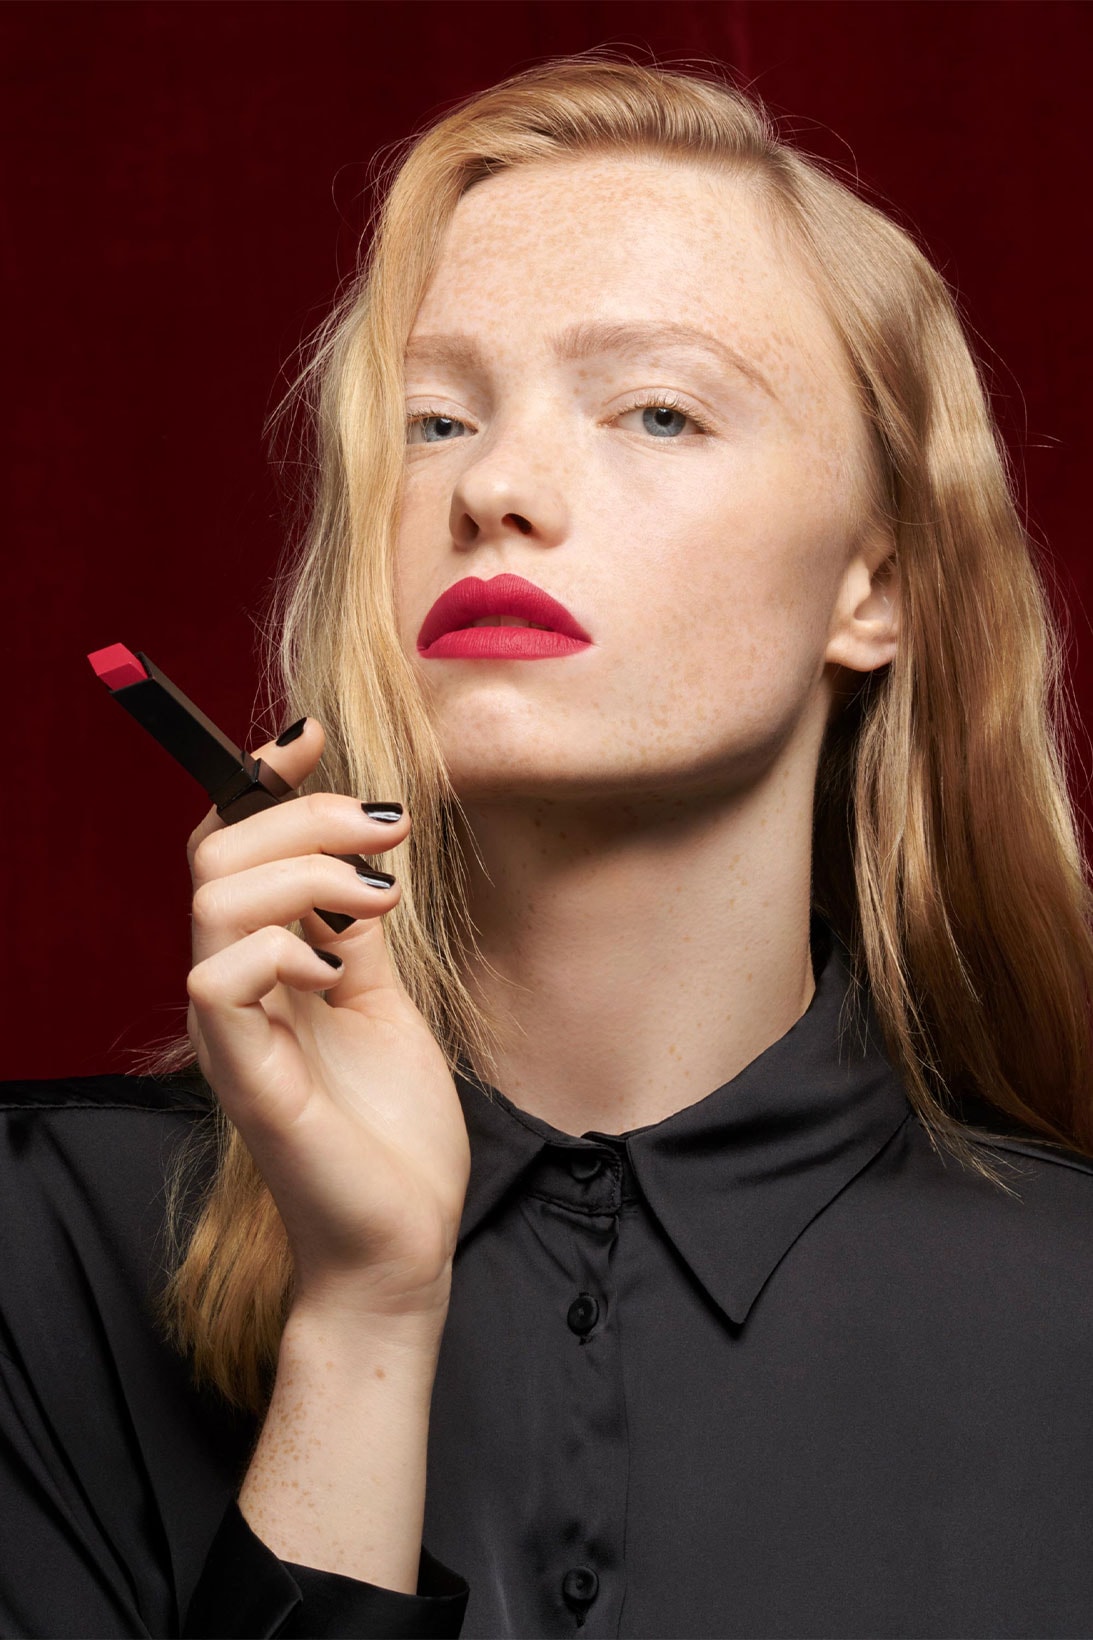 YSL Beauty “The Slim Velvet Radical” model pink shade